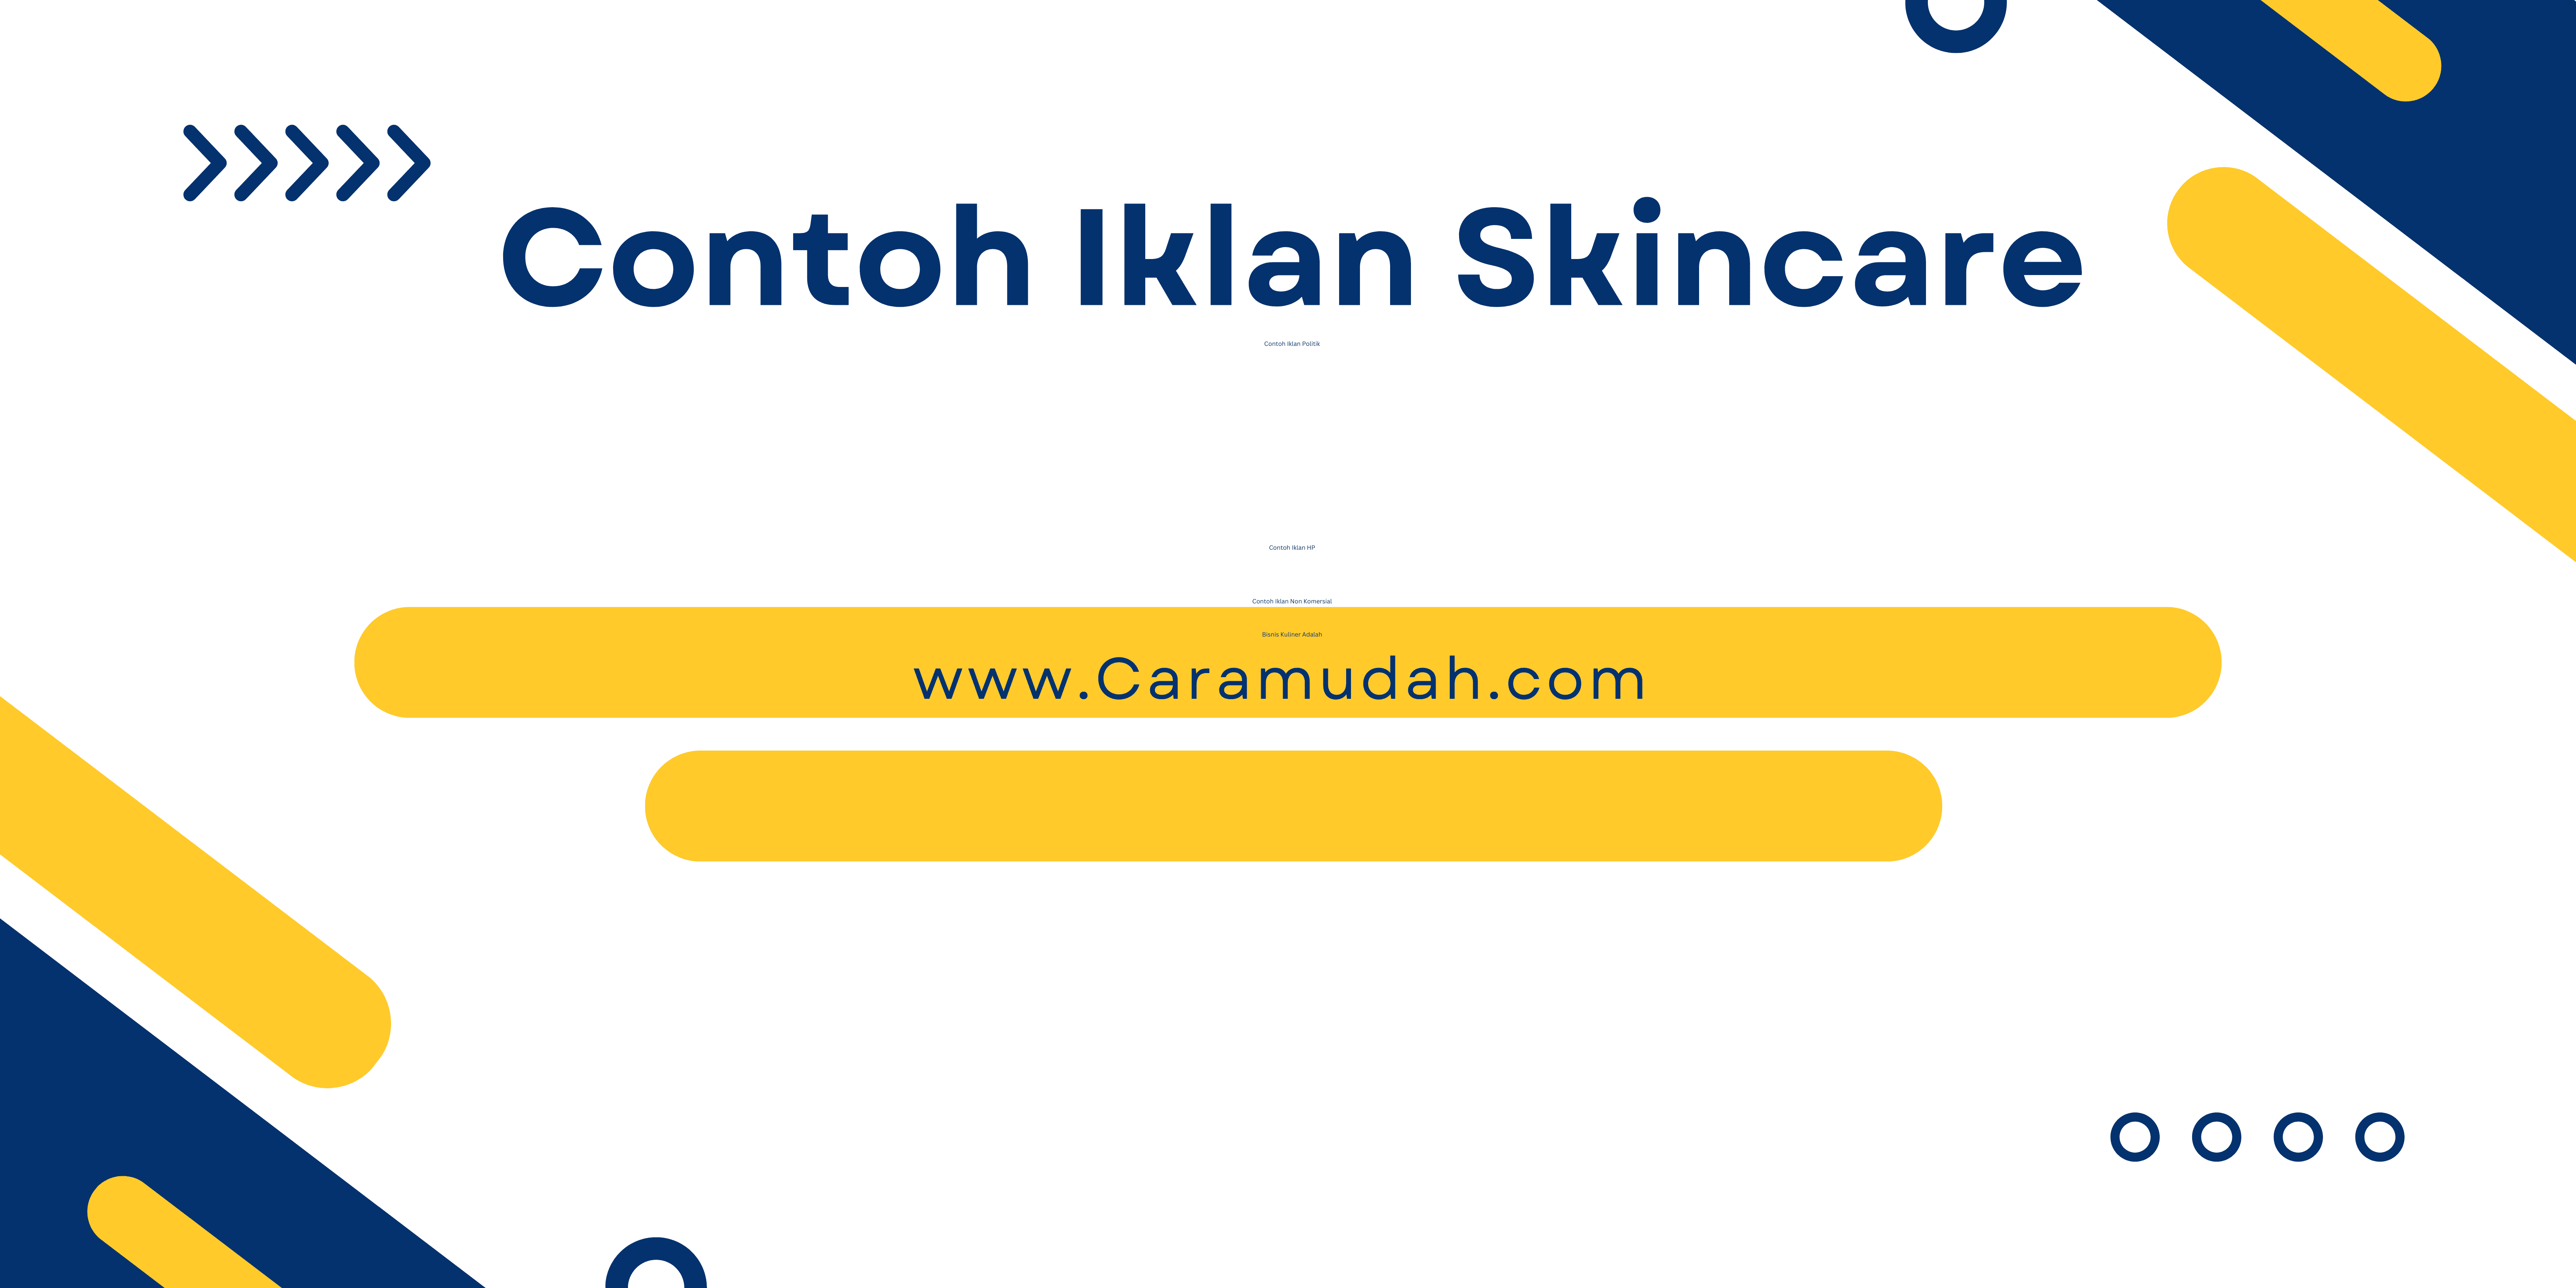 Contoh Iklan Skincare